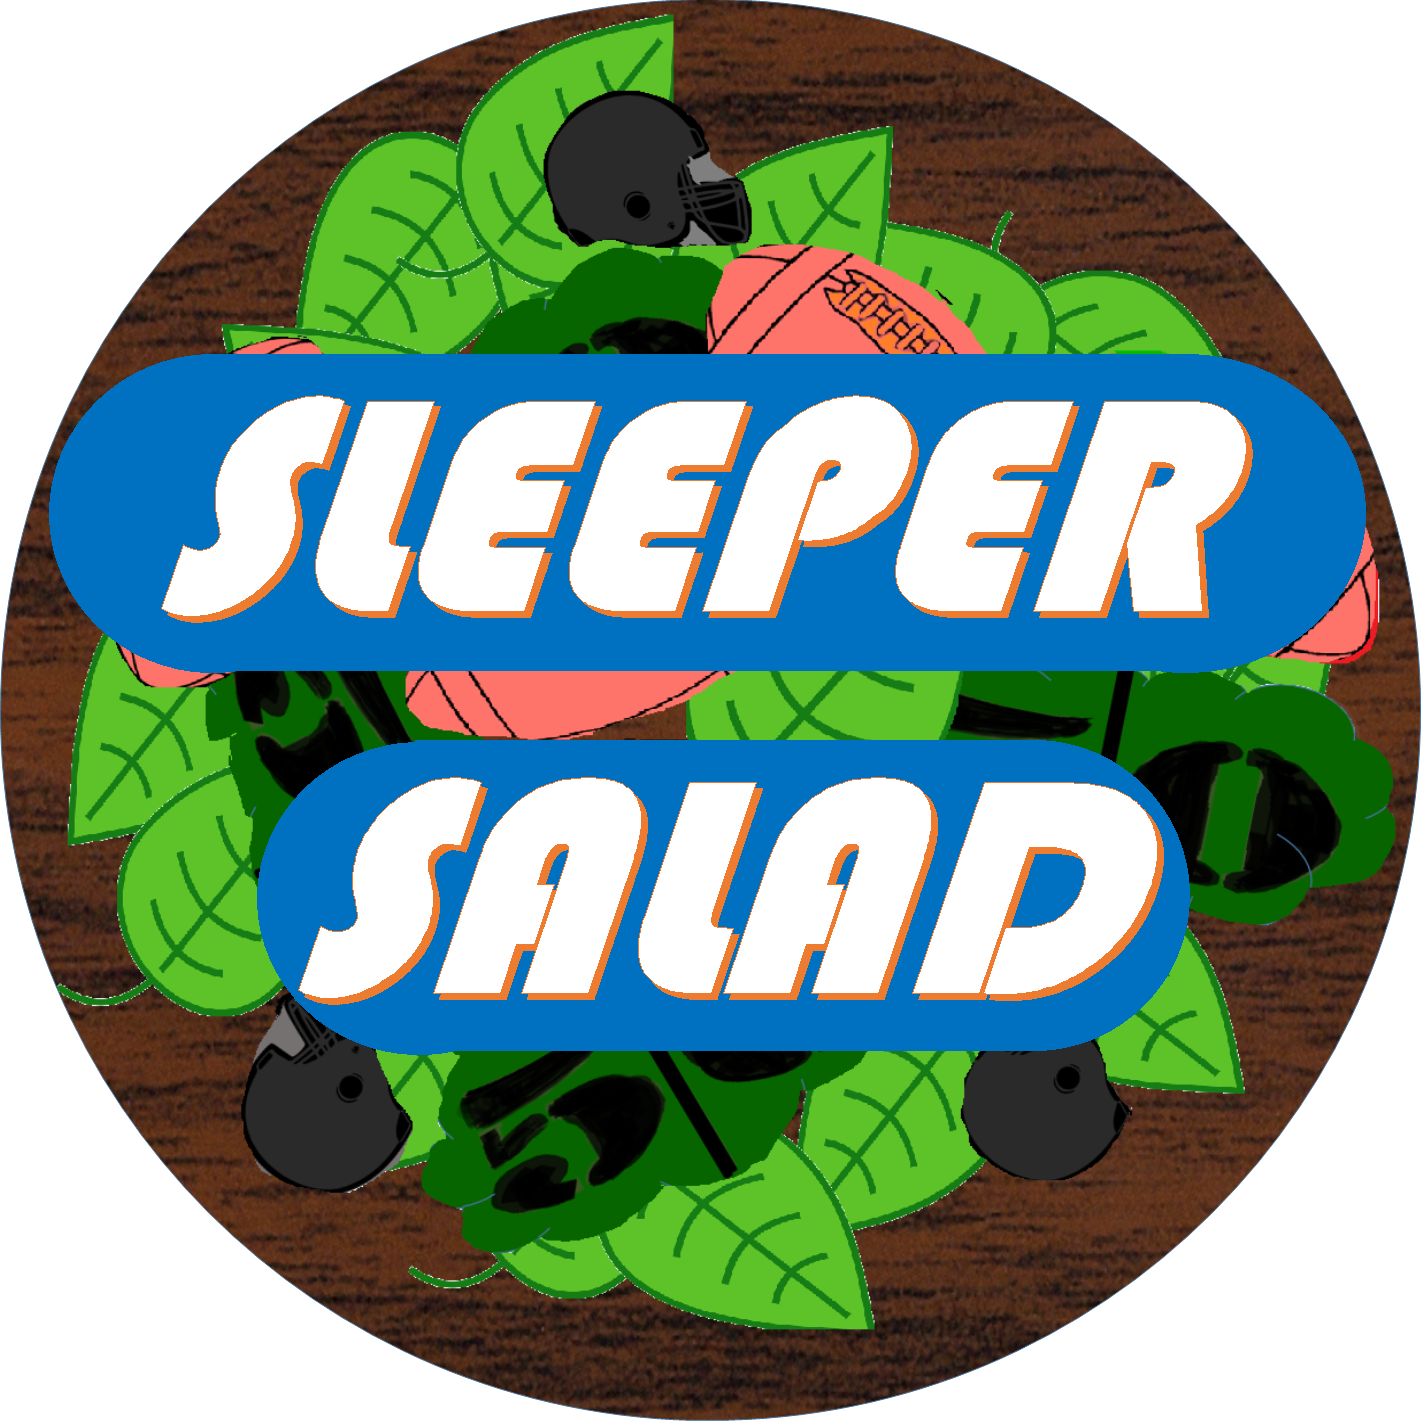 Sleeper Salad